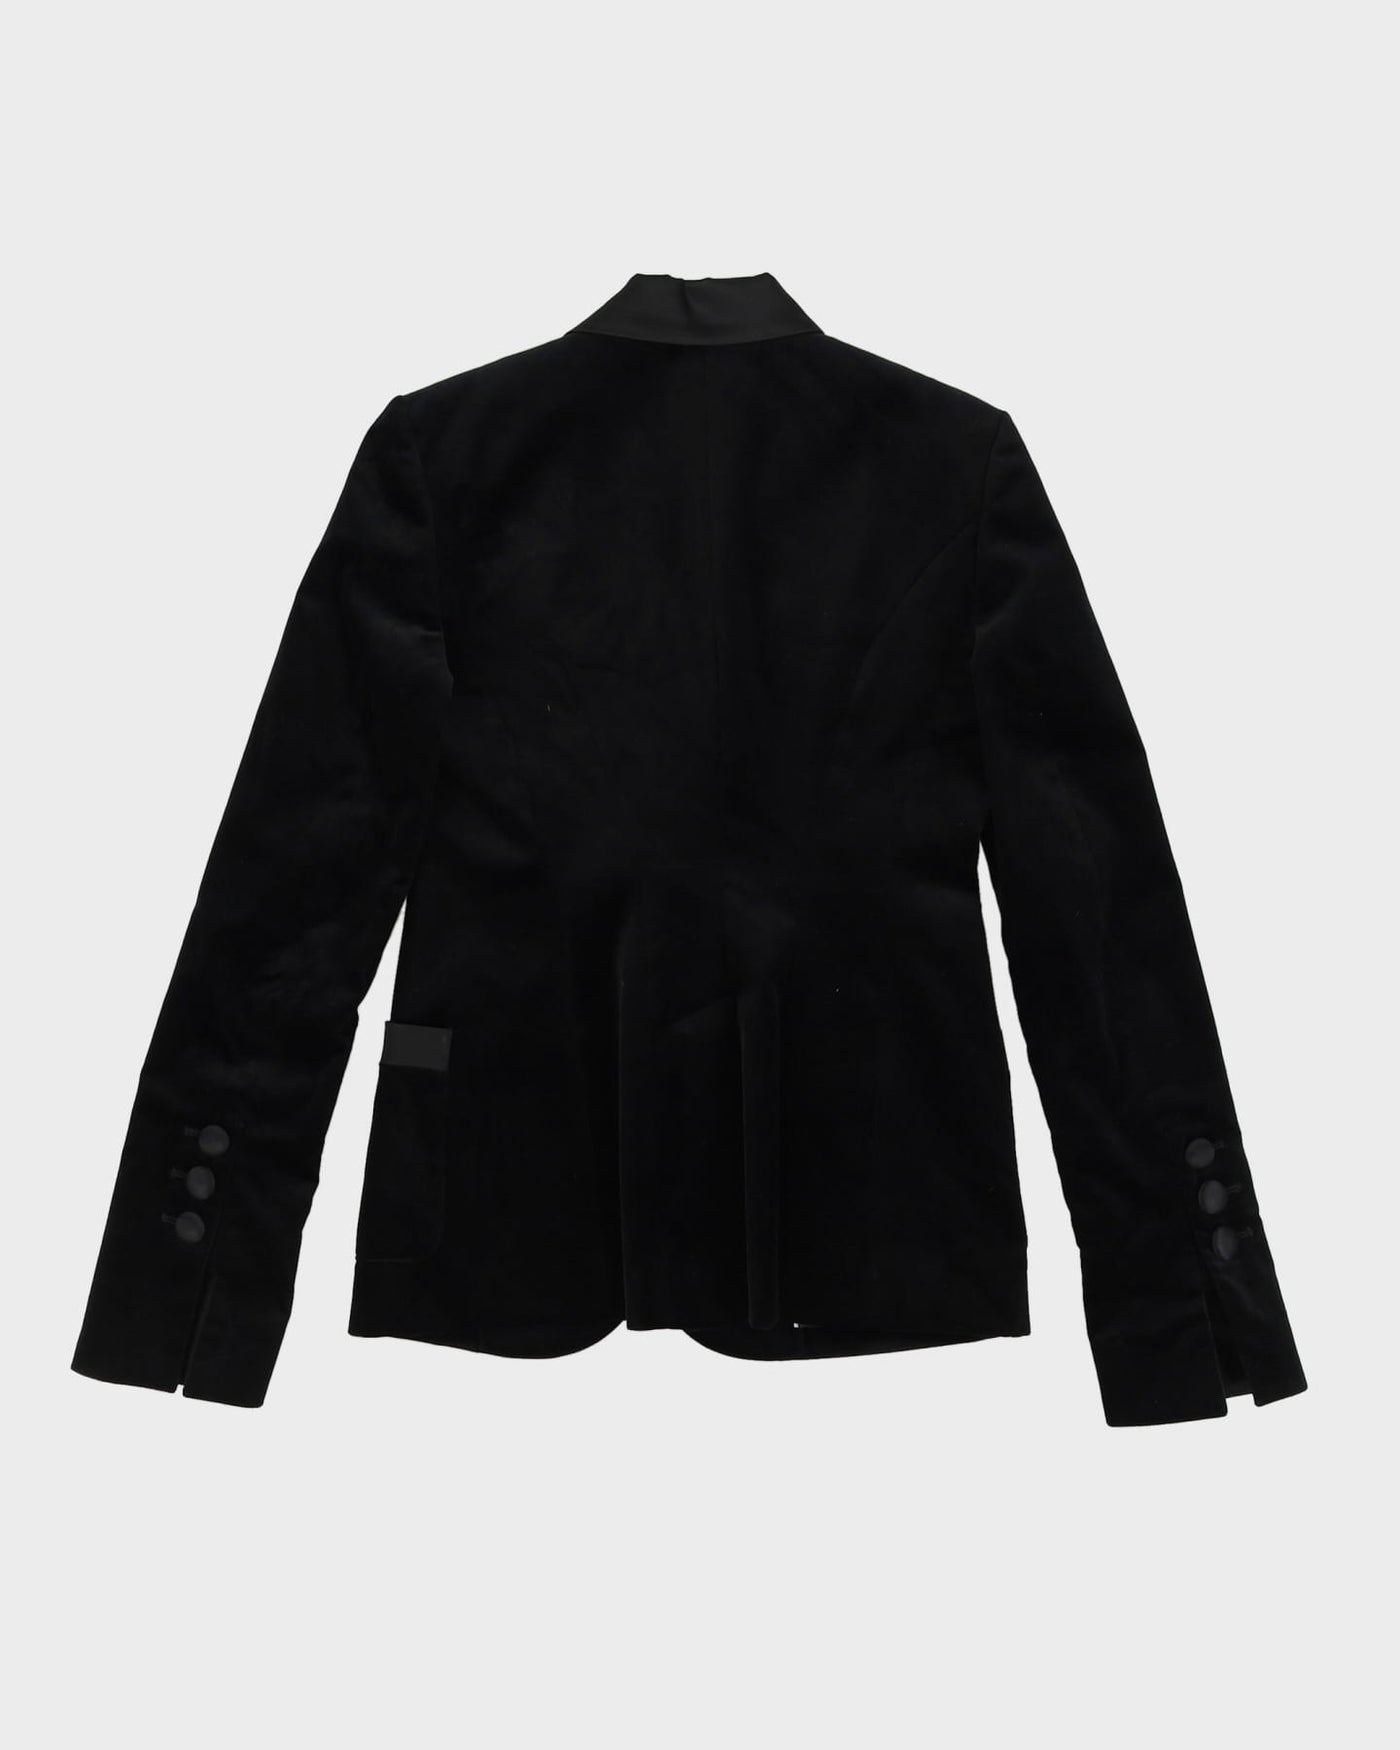 Guess Black Velvet Blazer Jacket - XXS / XS